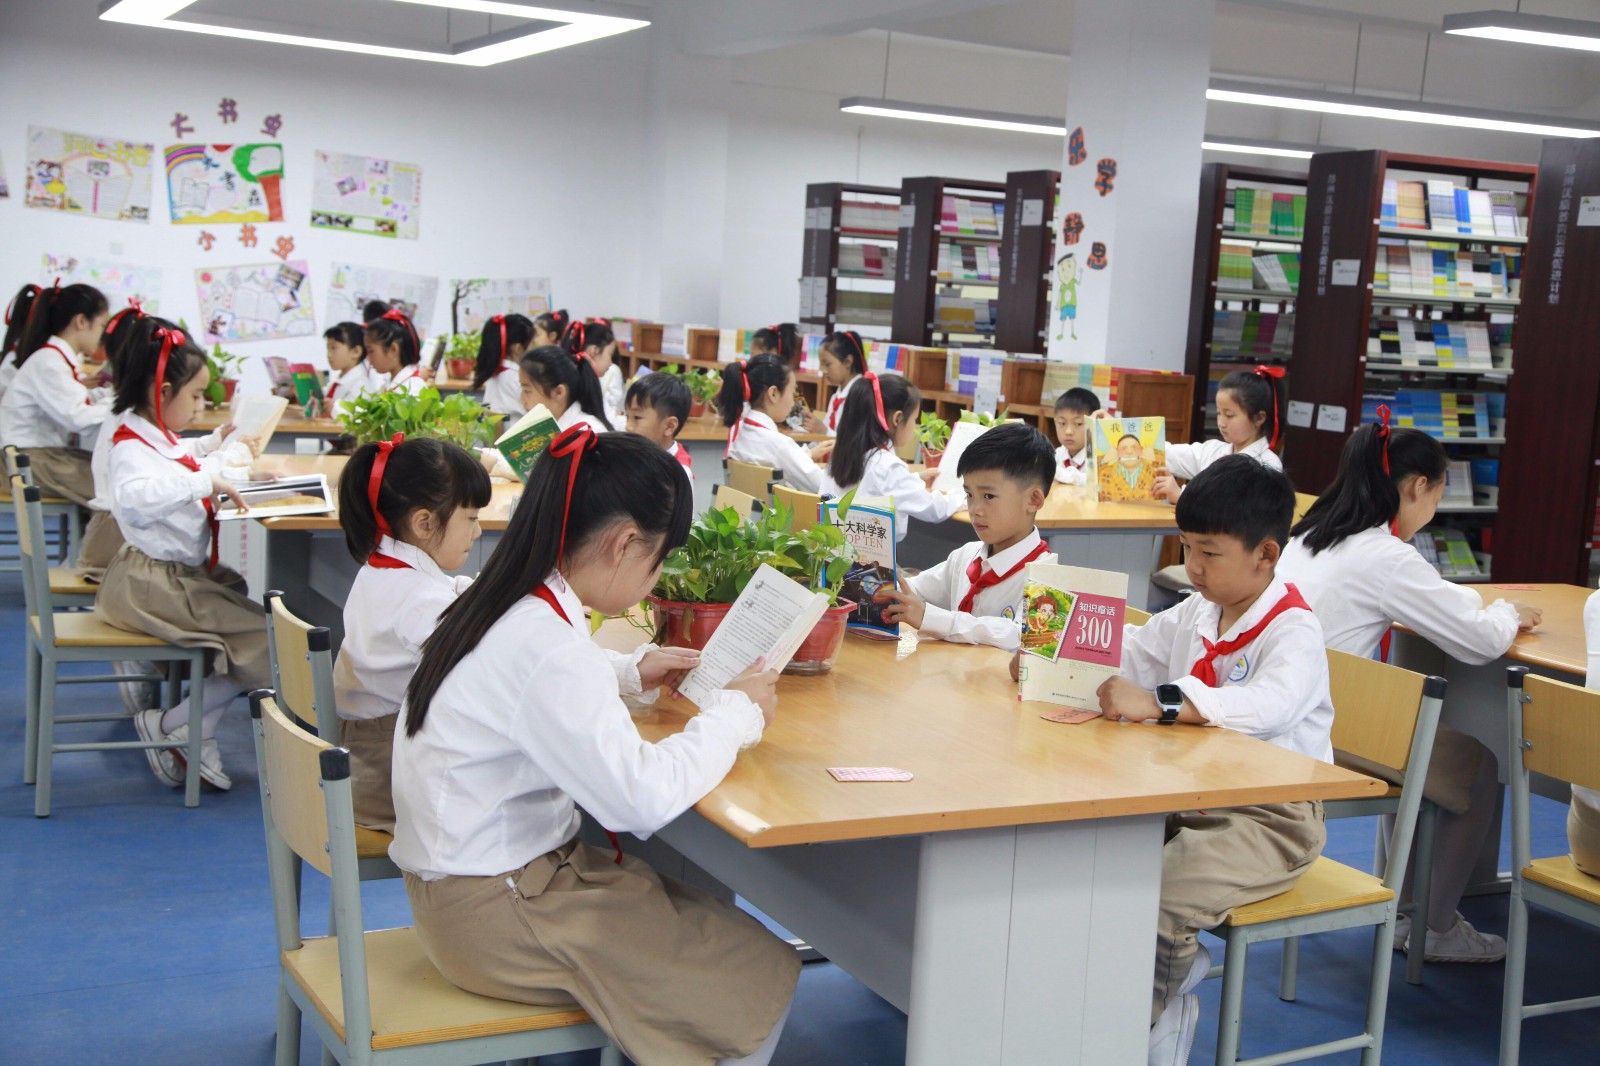 郑州市管城区第二实验小学新建图书馆七彩书屋正式开放啦